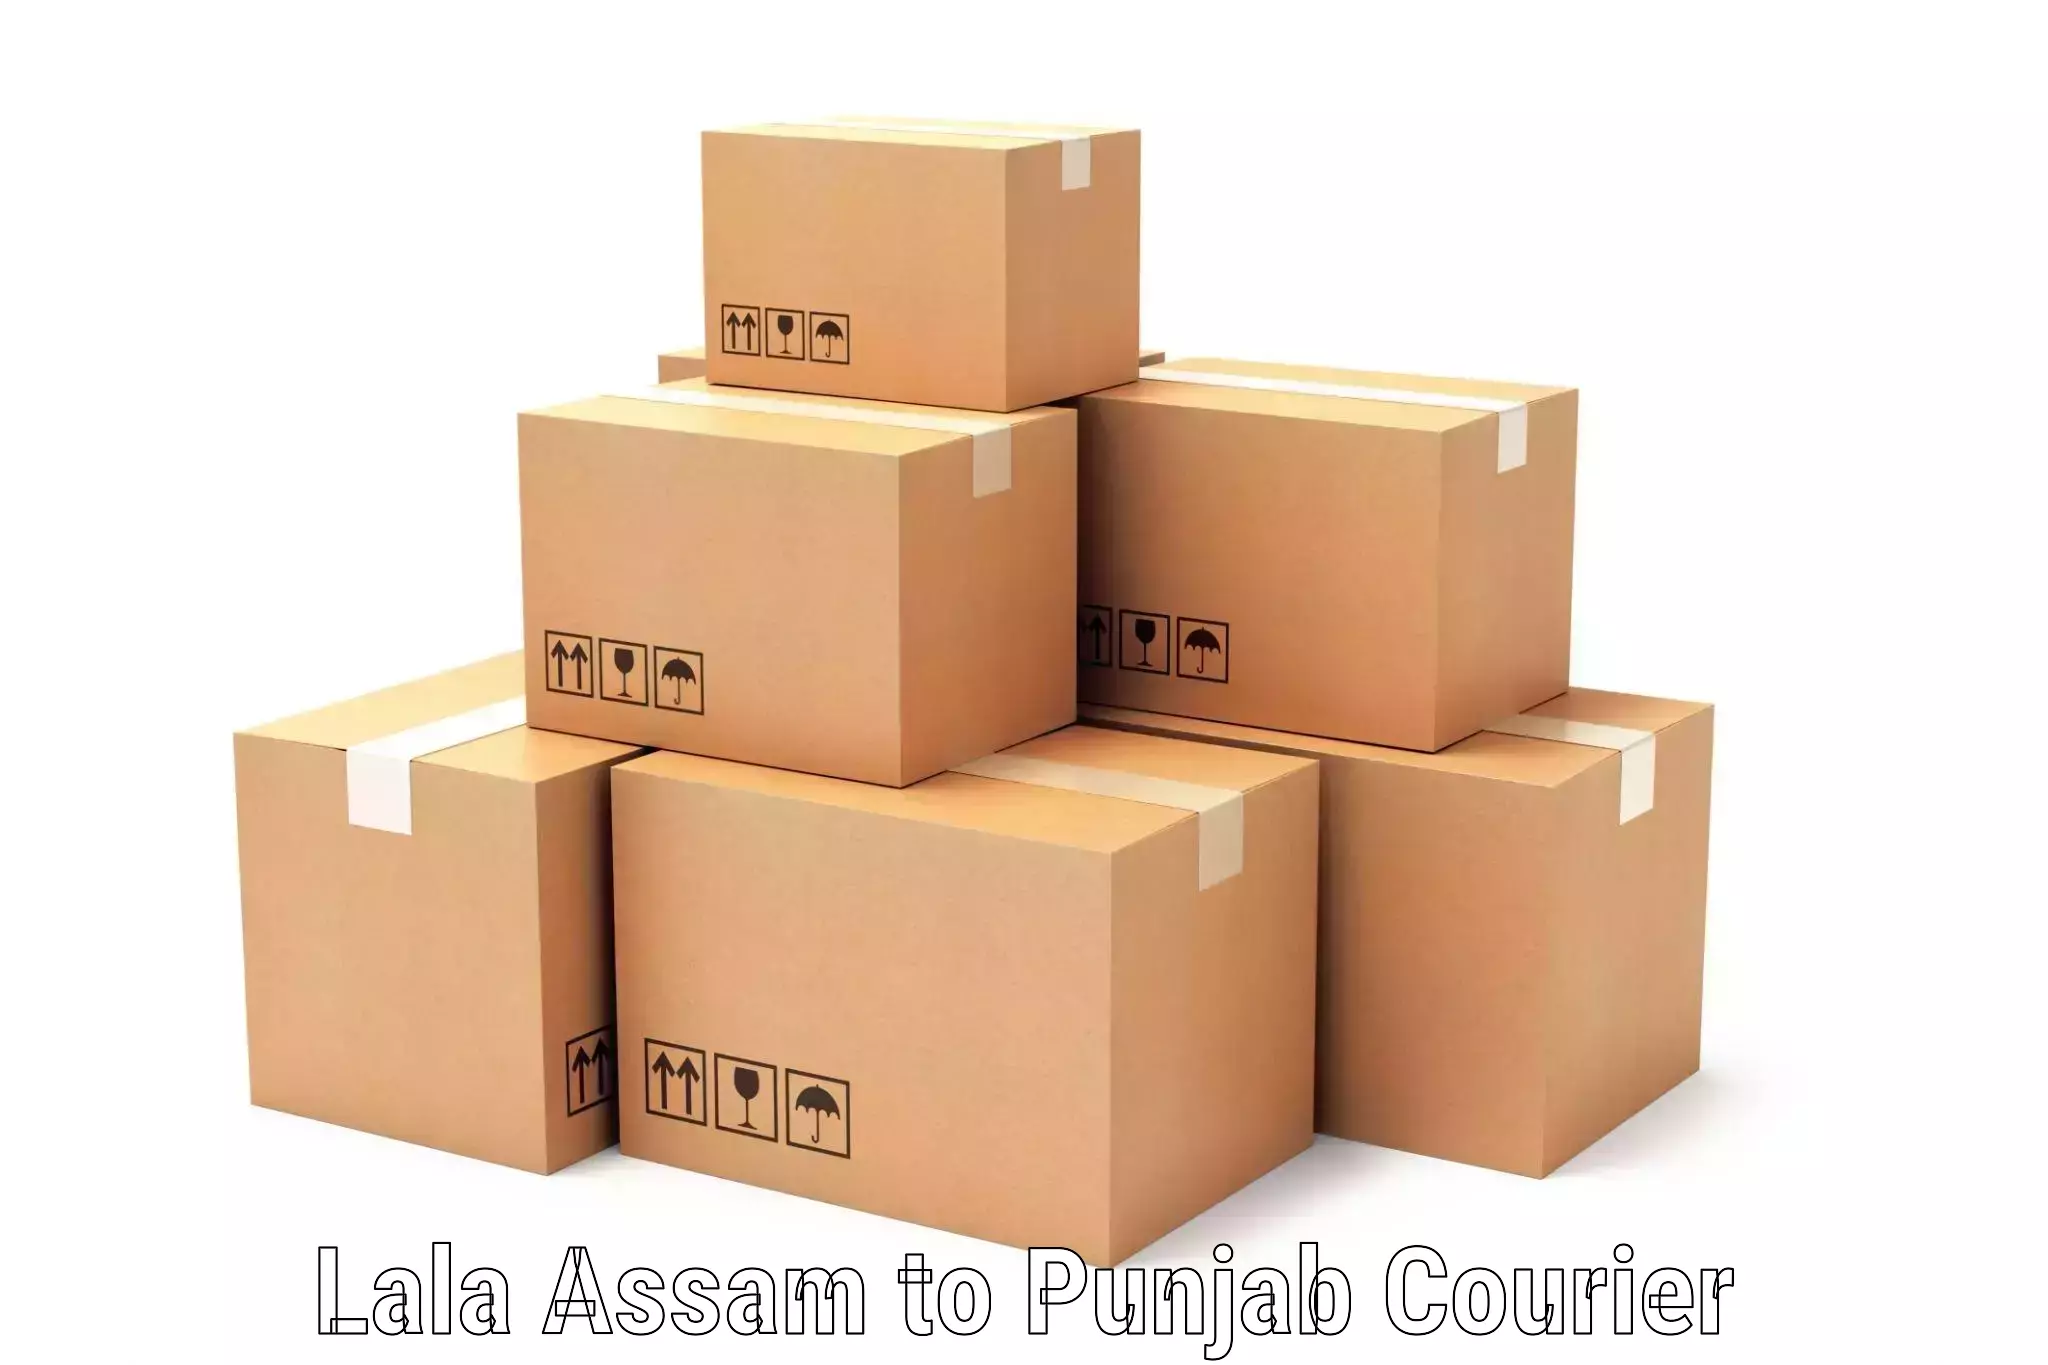 Customer-centric shipping Lala Assam to Phagwara